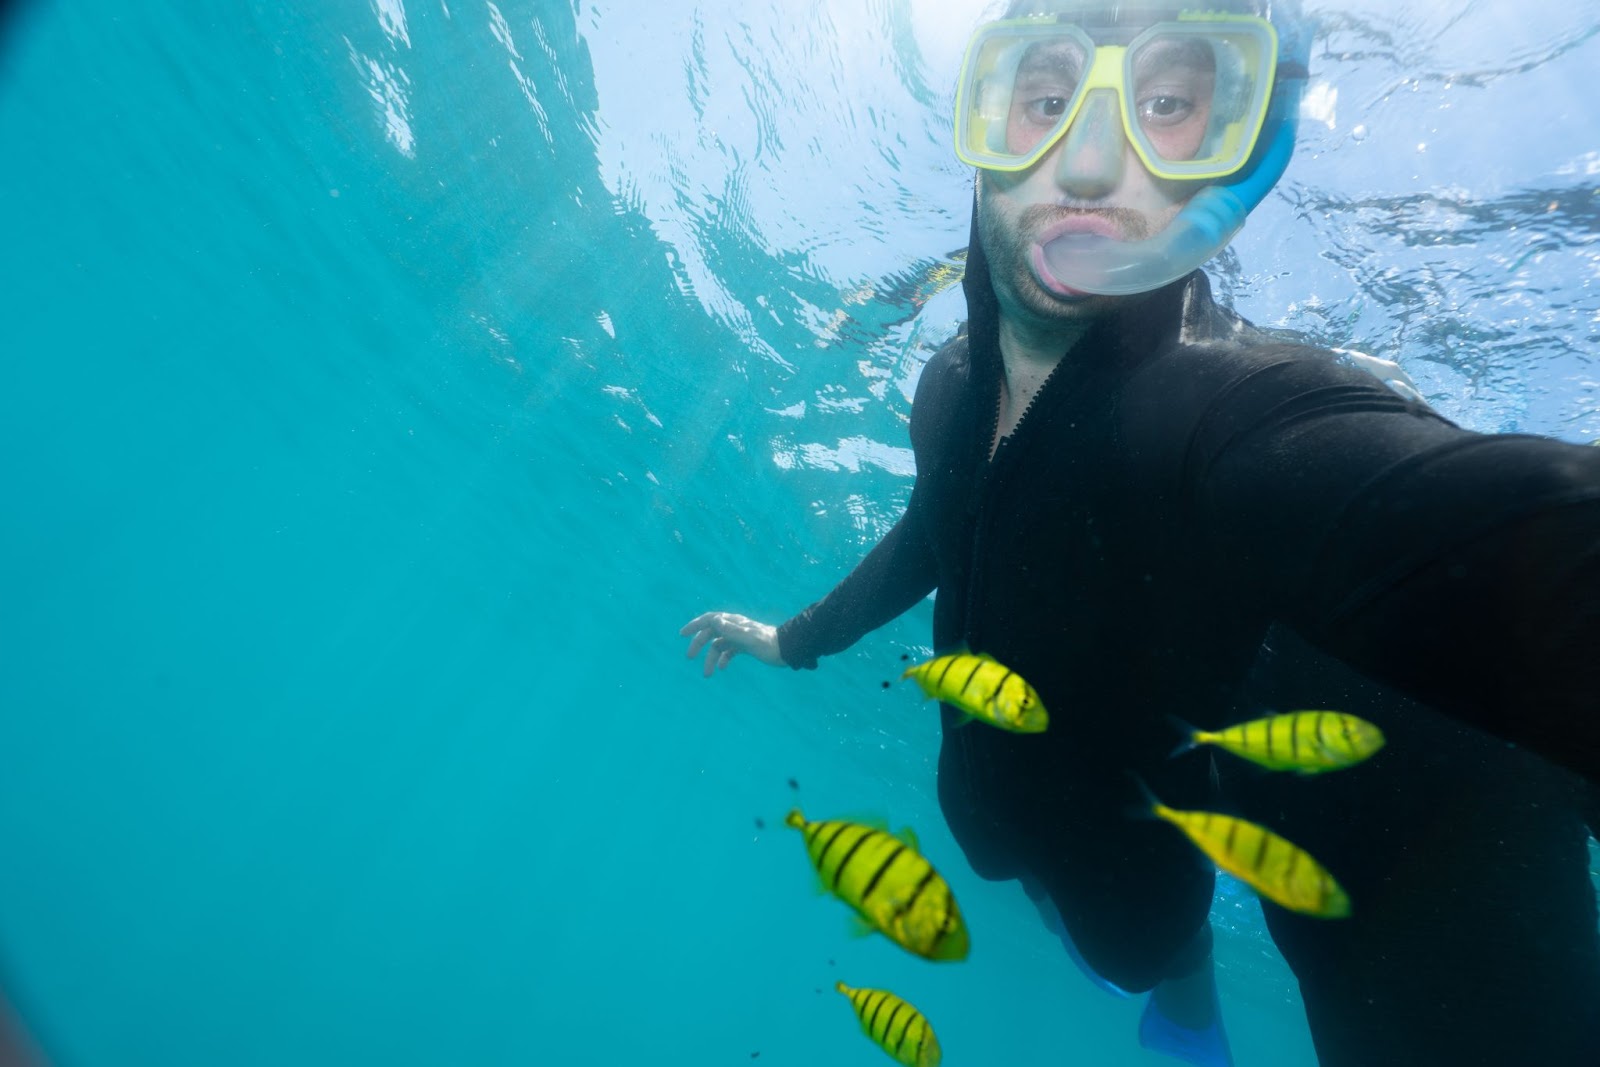 A man is taking a selfie underwater.